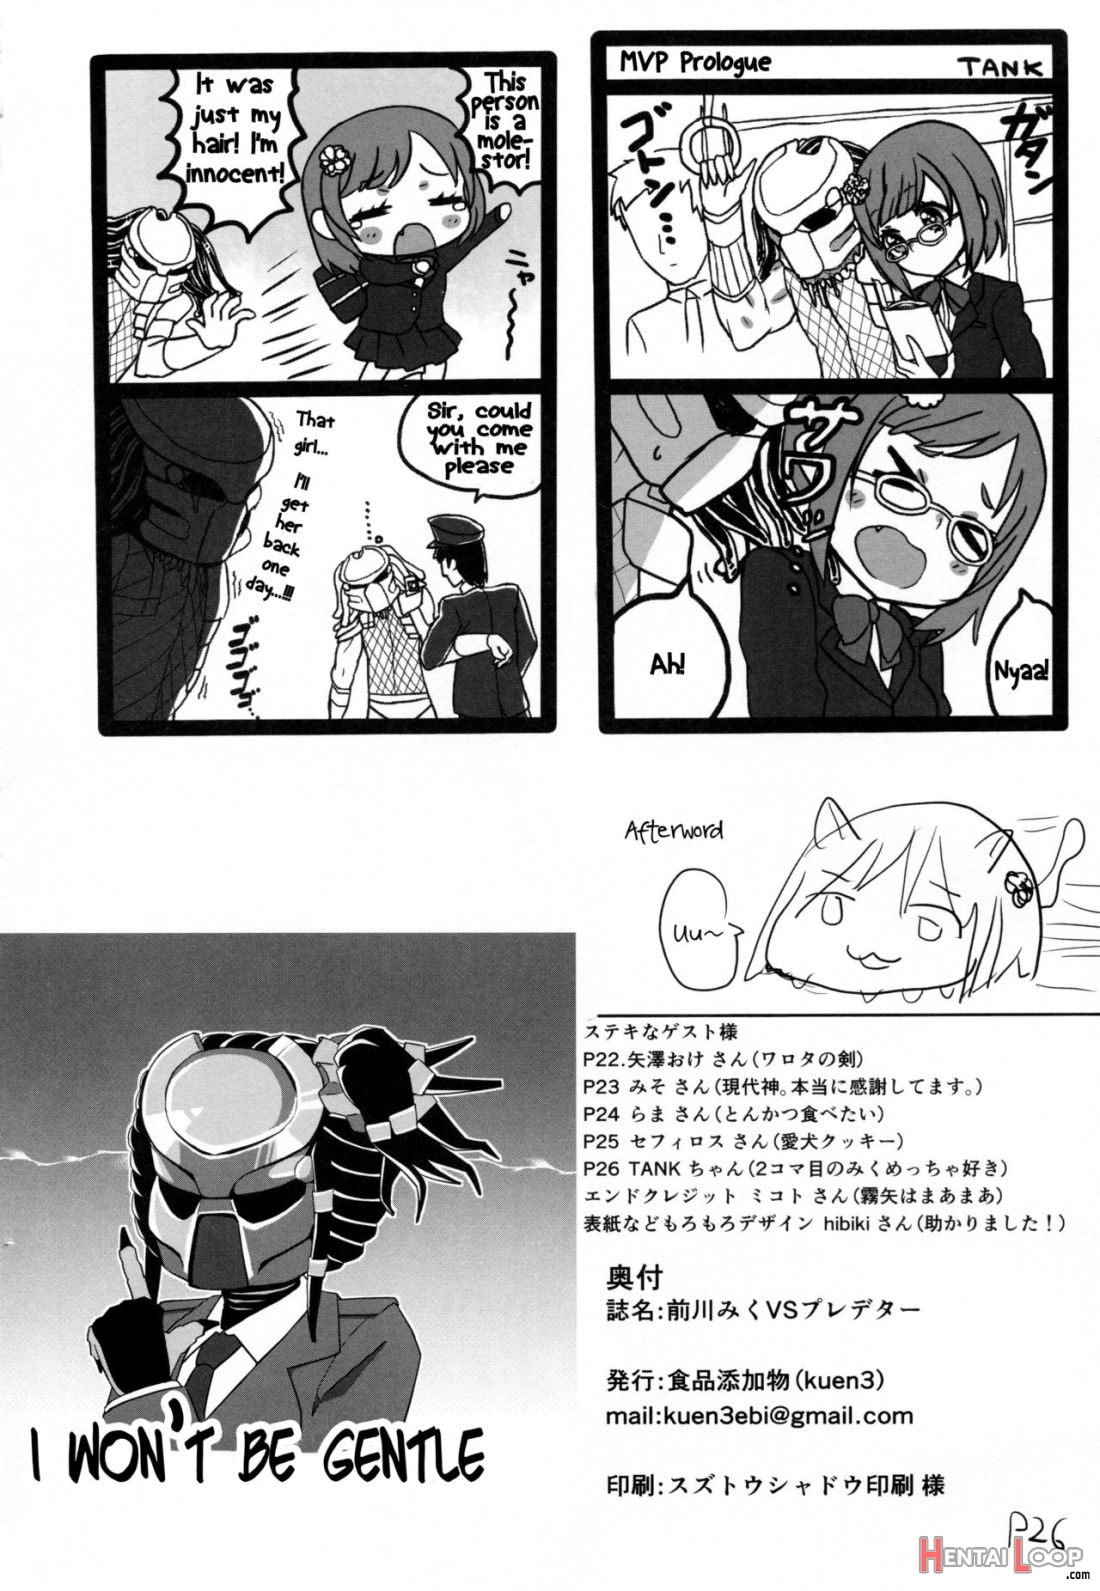 Maekawa Miku Vs Predator page 23